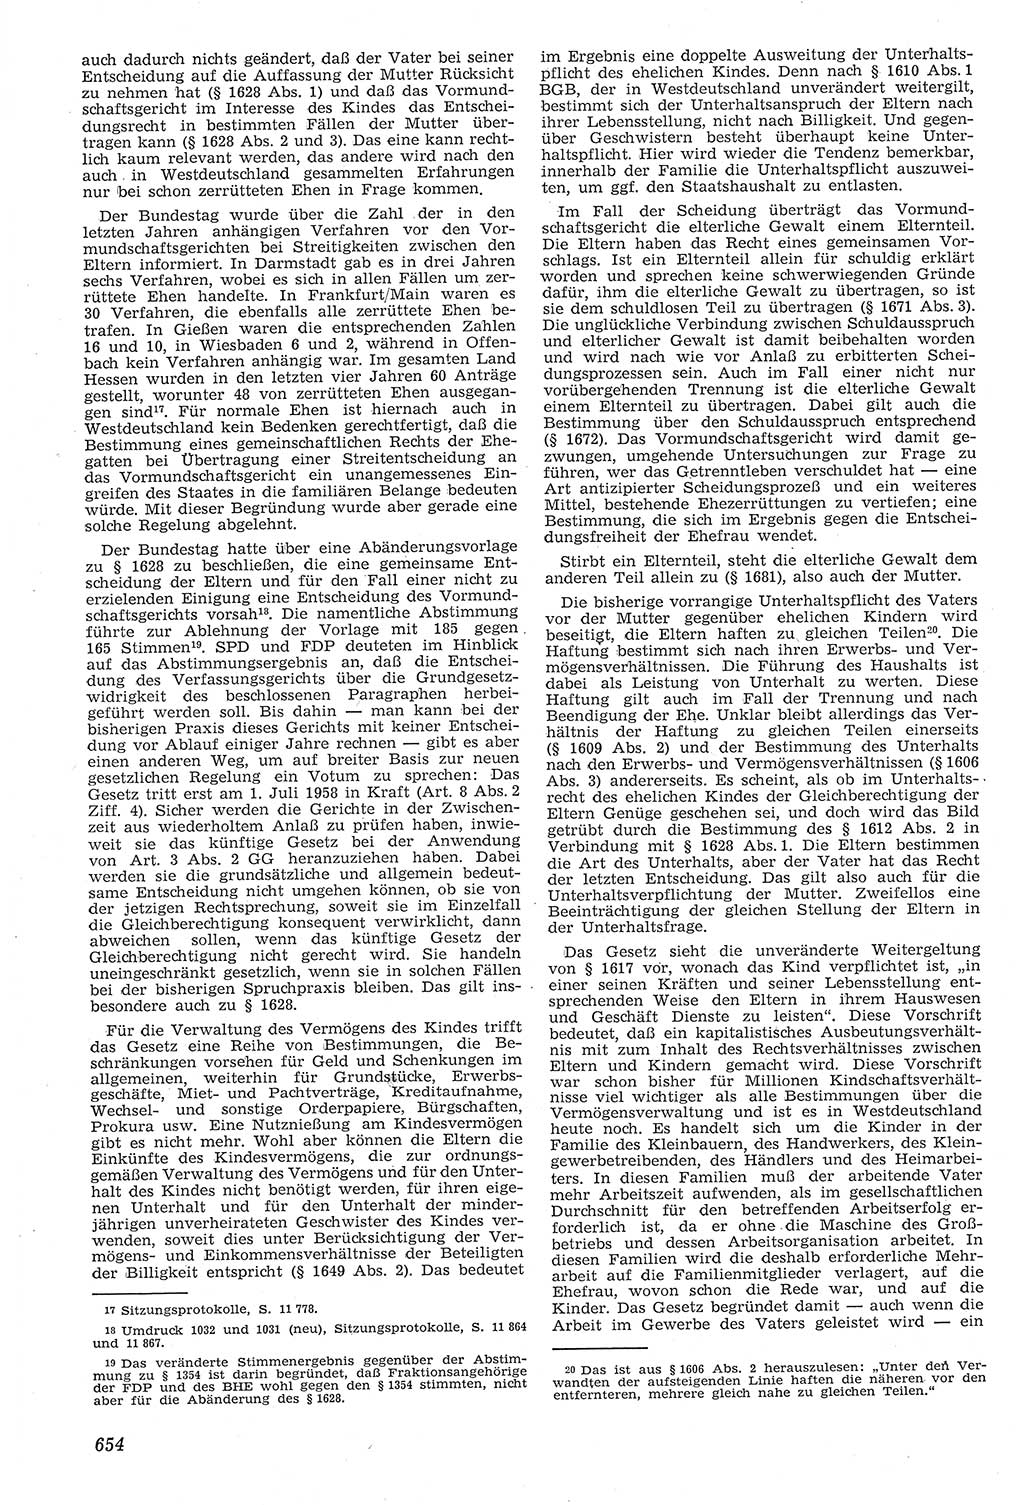 Neue Justiz (NJ), Zeitschrift für Recht und Rechtswissenschaft [Deutsche Demokratische Republik (DDR)], 11. Jahrgang 1957, Seite 654 (NJ DDR 1957, S. 654)